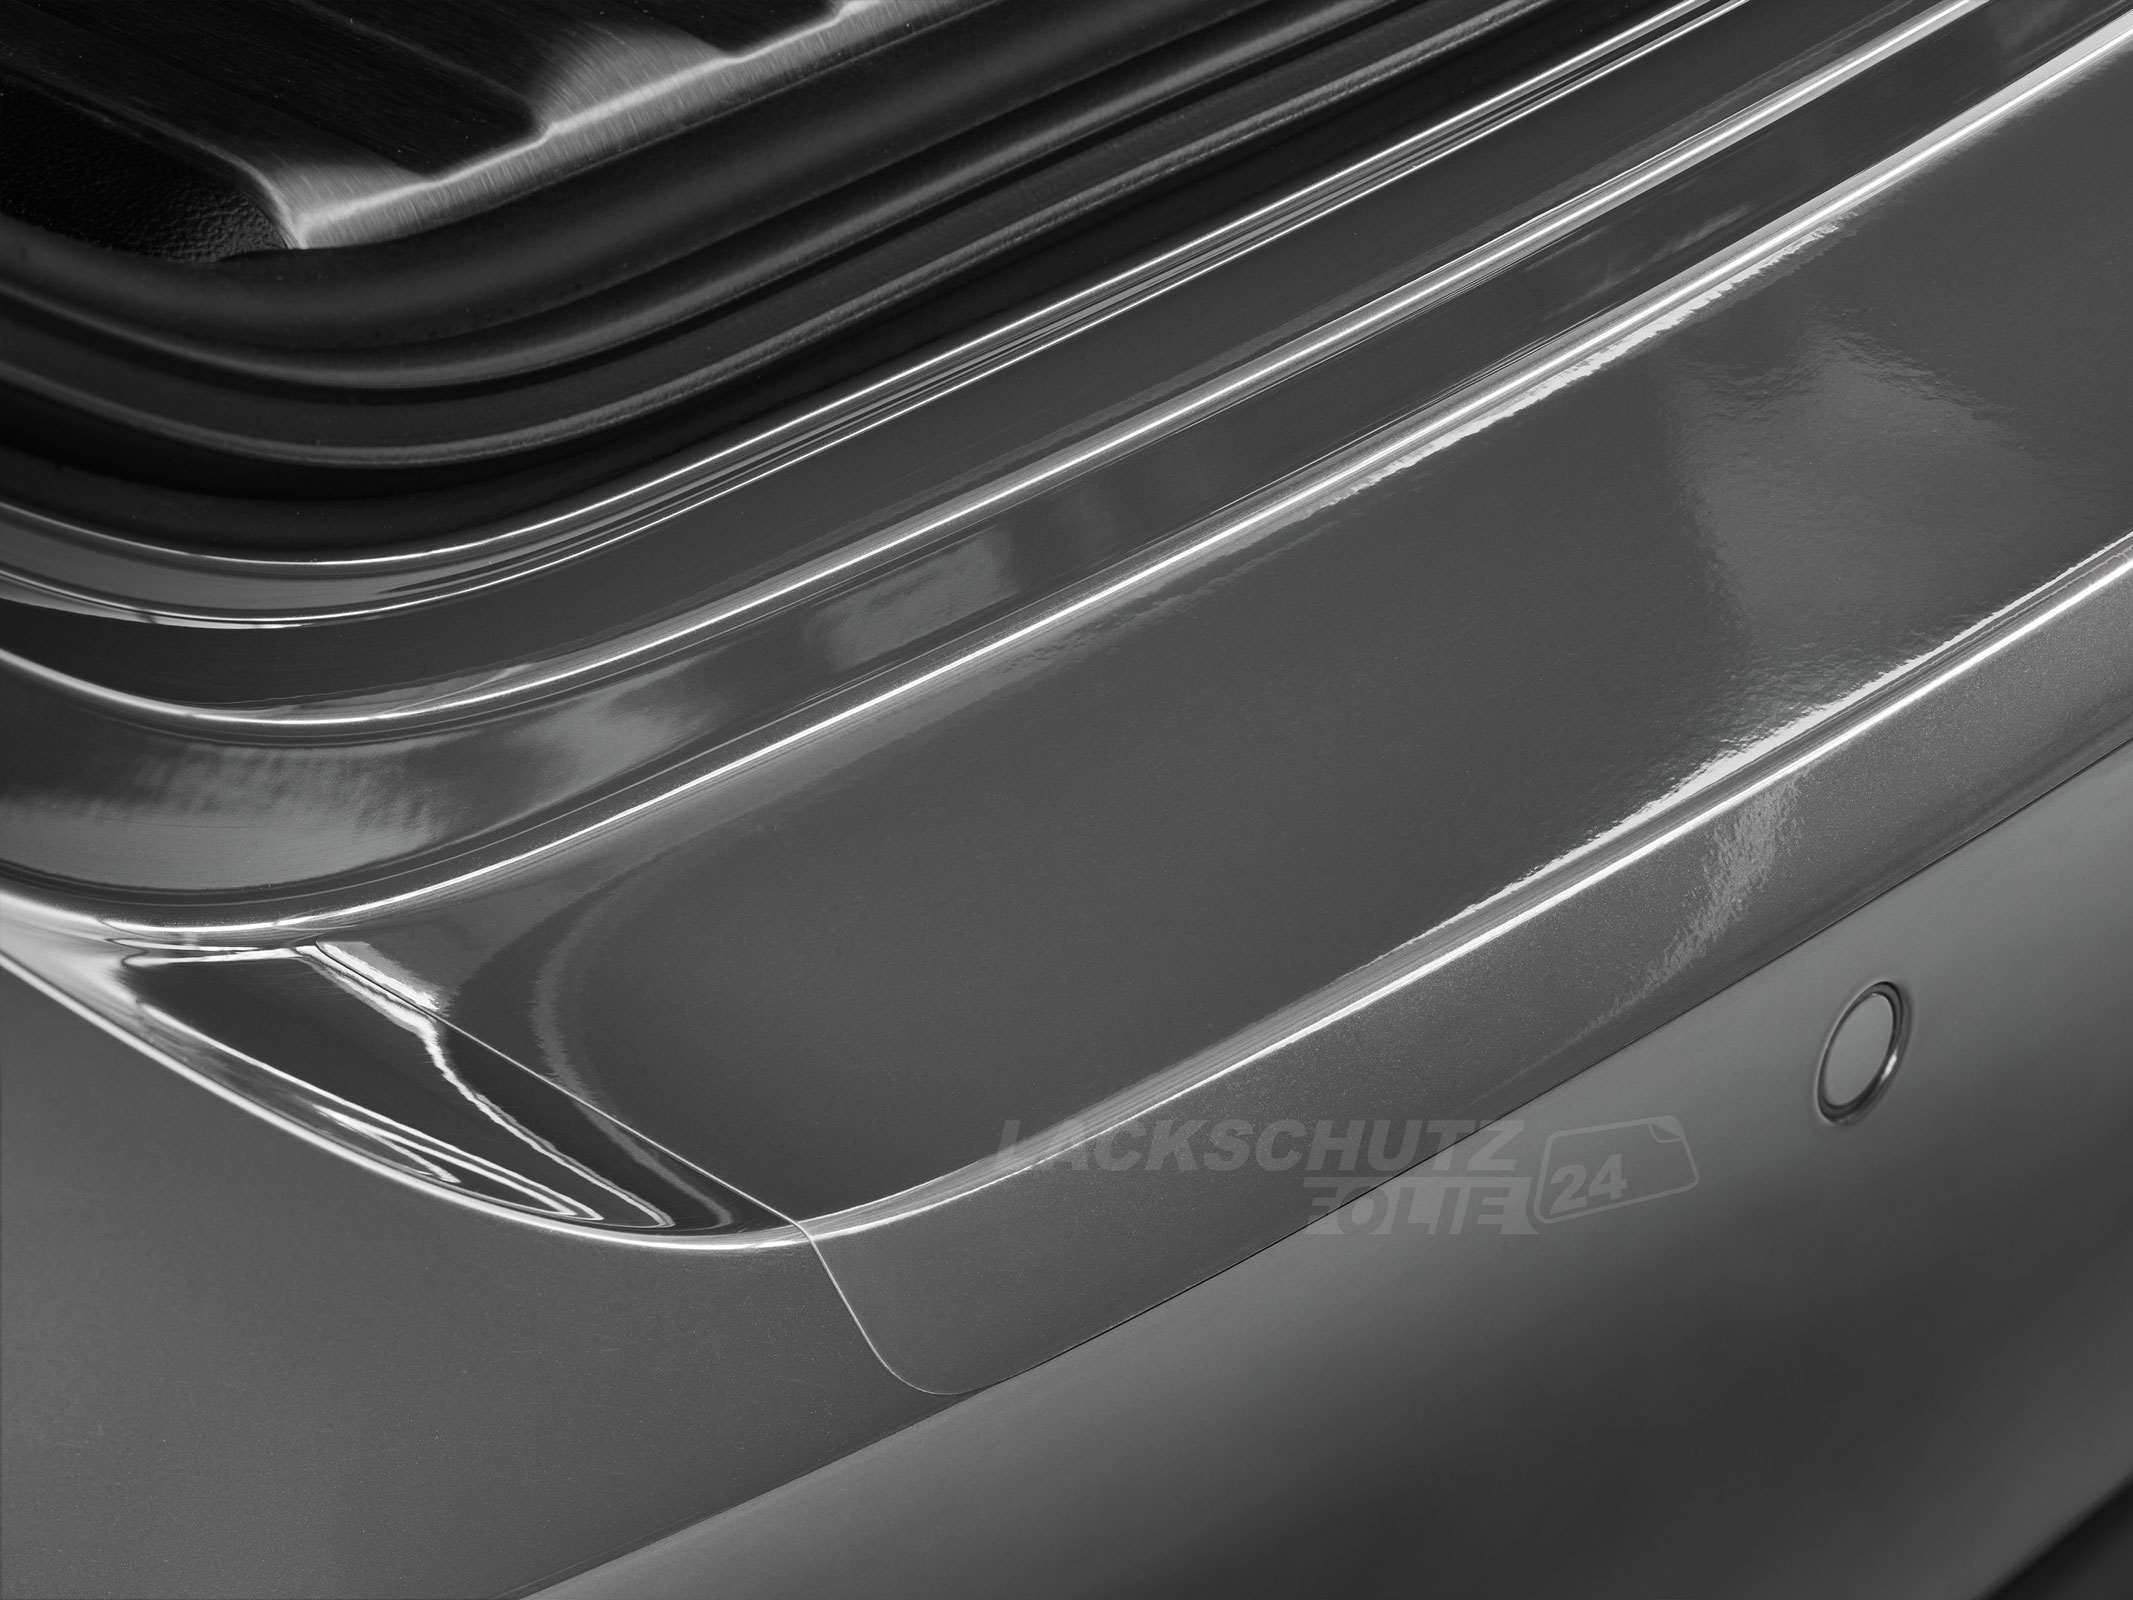 Ladekantenschutzfolie - Transparent Glatt Hochglänzend 150 µm stark für VW / Volkswagen EOS BJ 2006-2010